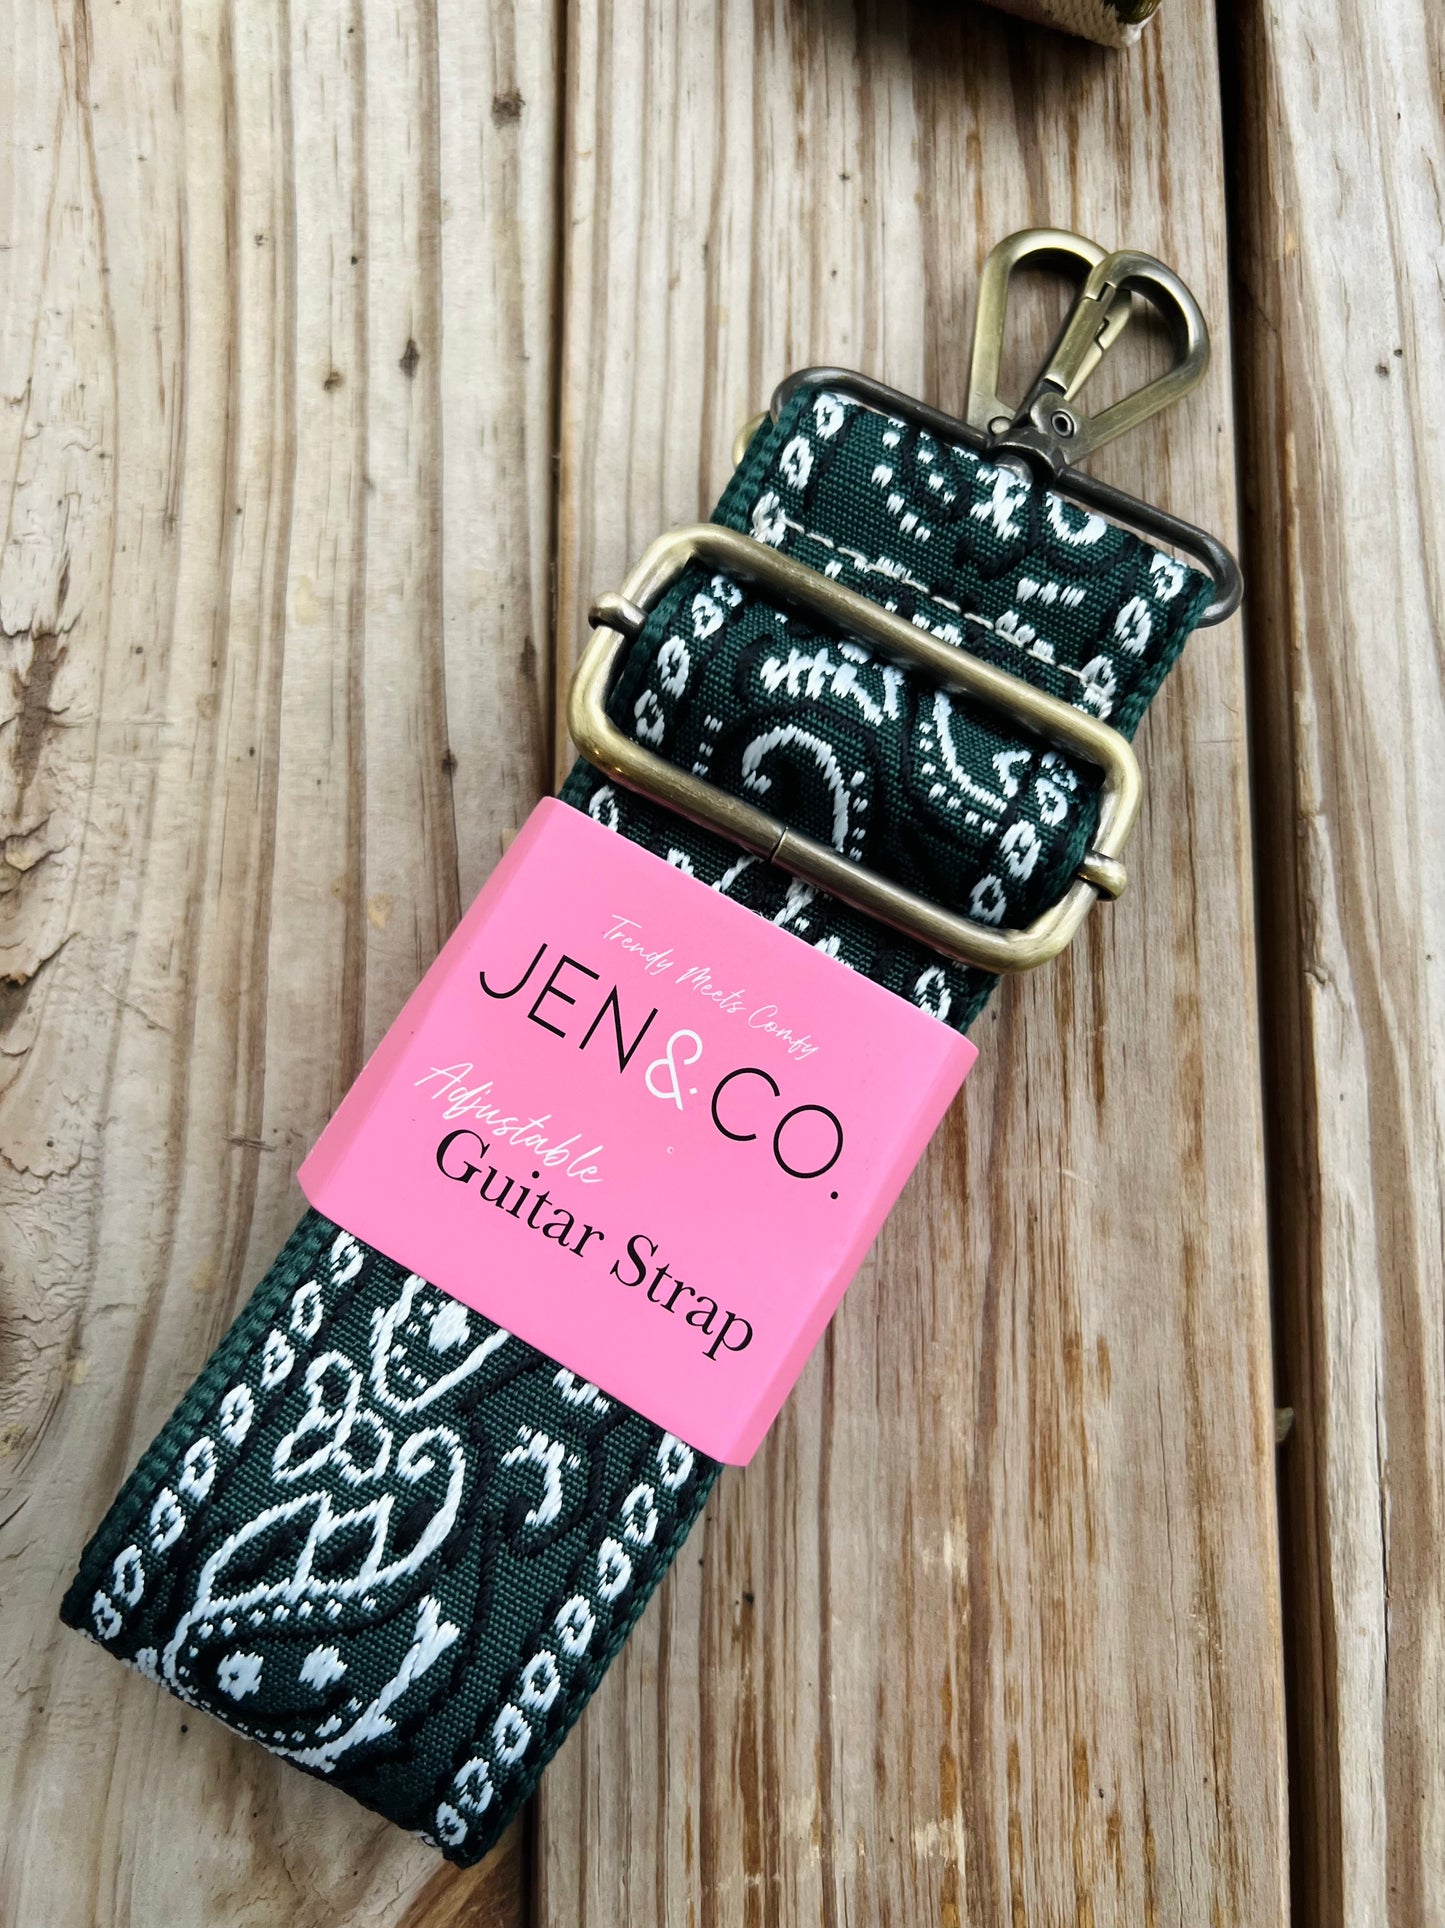 Jen & Co Adjustable Guitar Strap Camo Grey